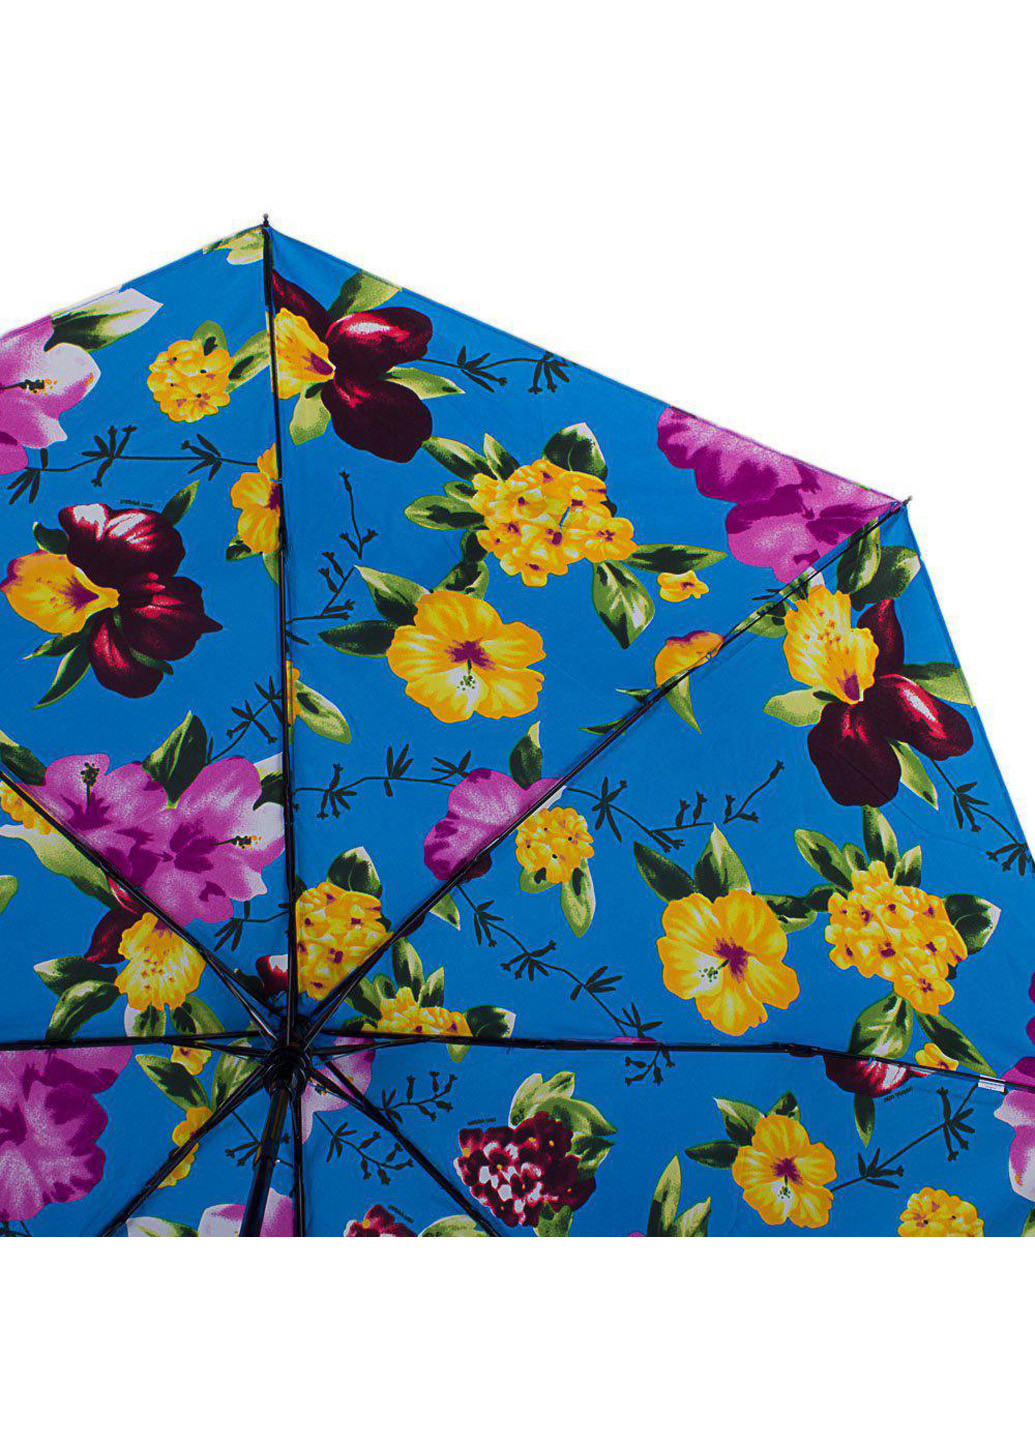 Женский складной зонт полуавтомат 95 см Happy Rain (194321413)